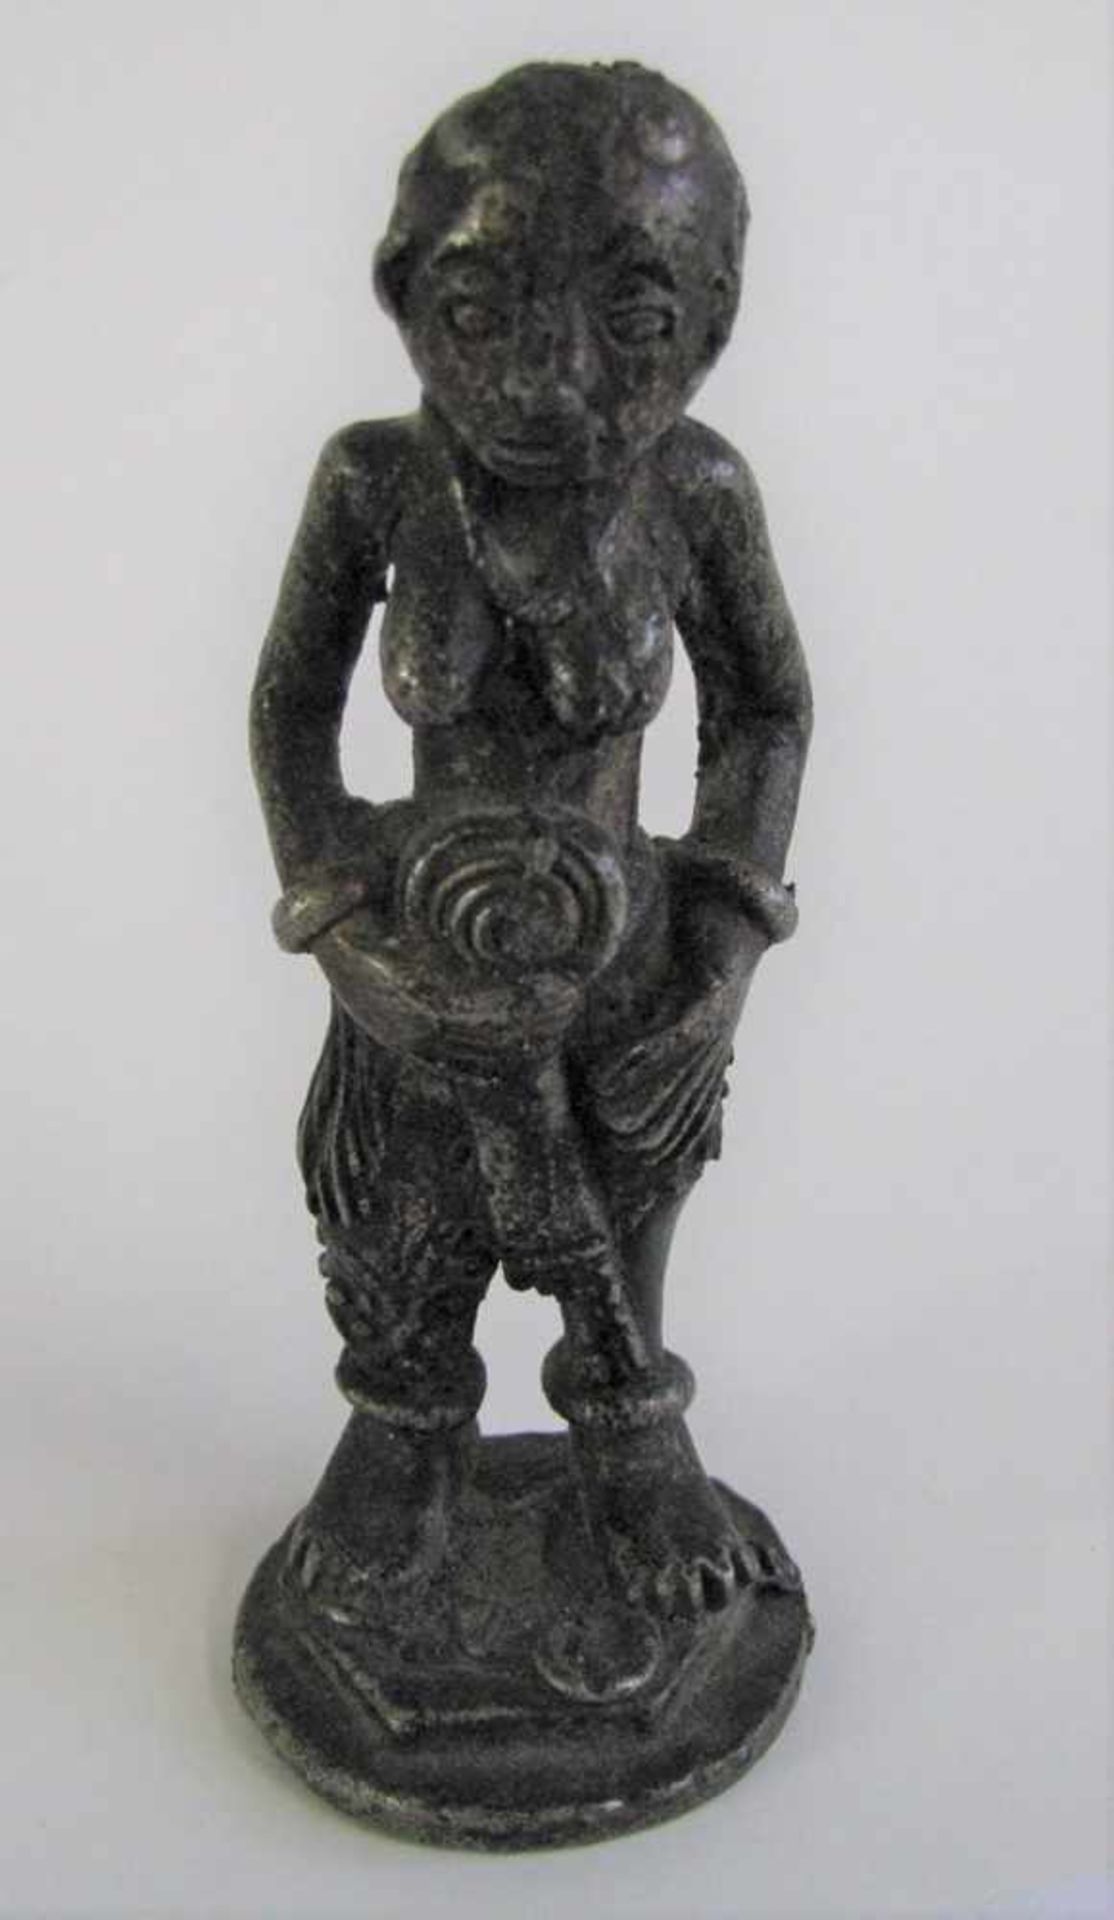 Stehende, weibliche Figur, wohl Indien, Bronze, h 8 cm, d 3 cm.- - -19.00 % buyer's premium on the